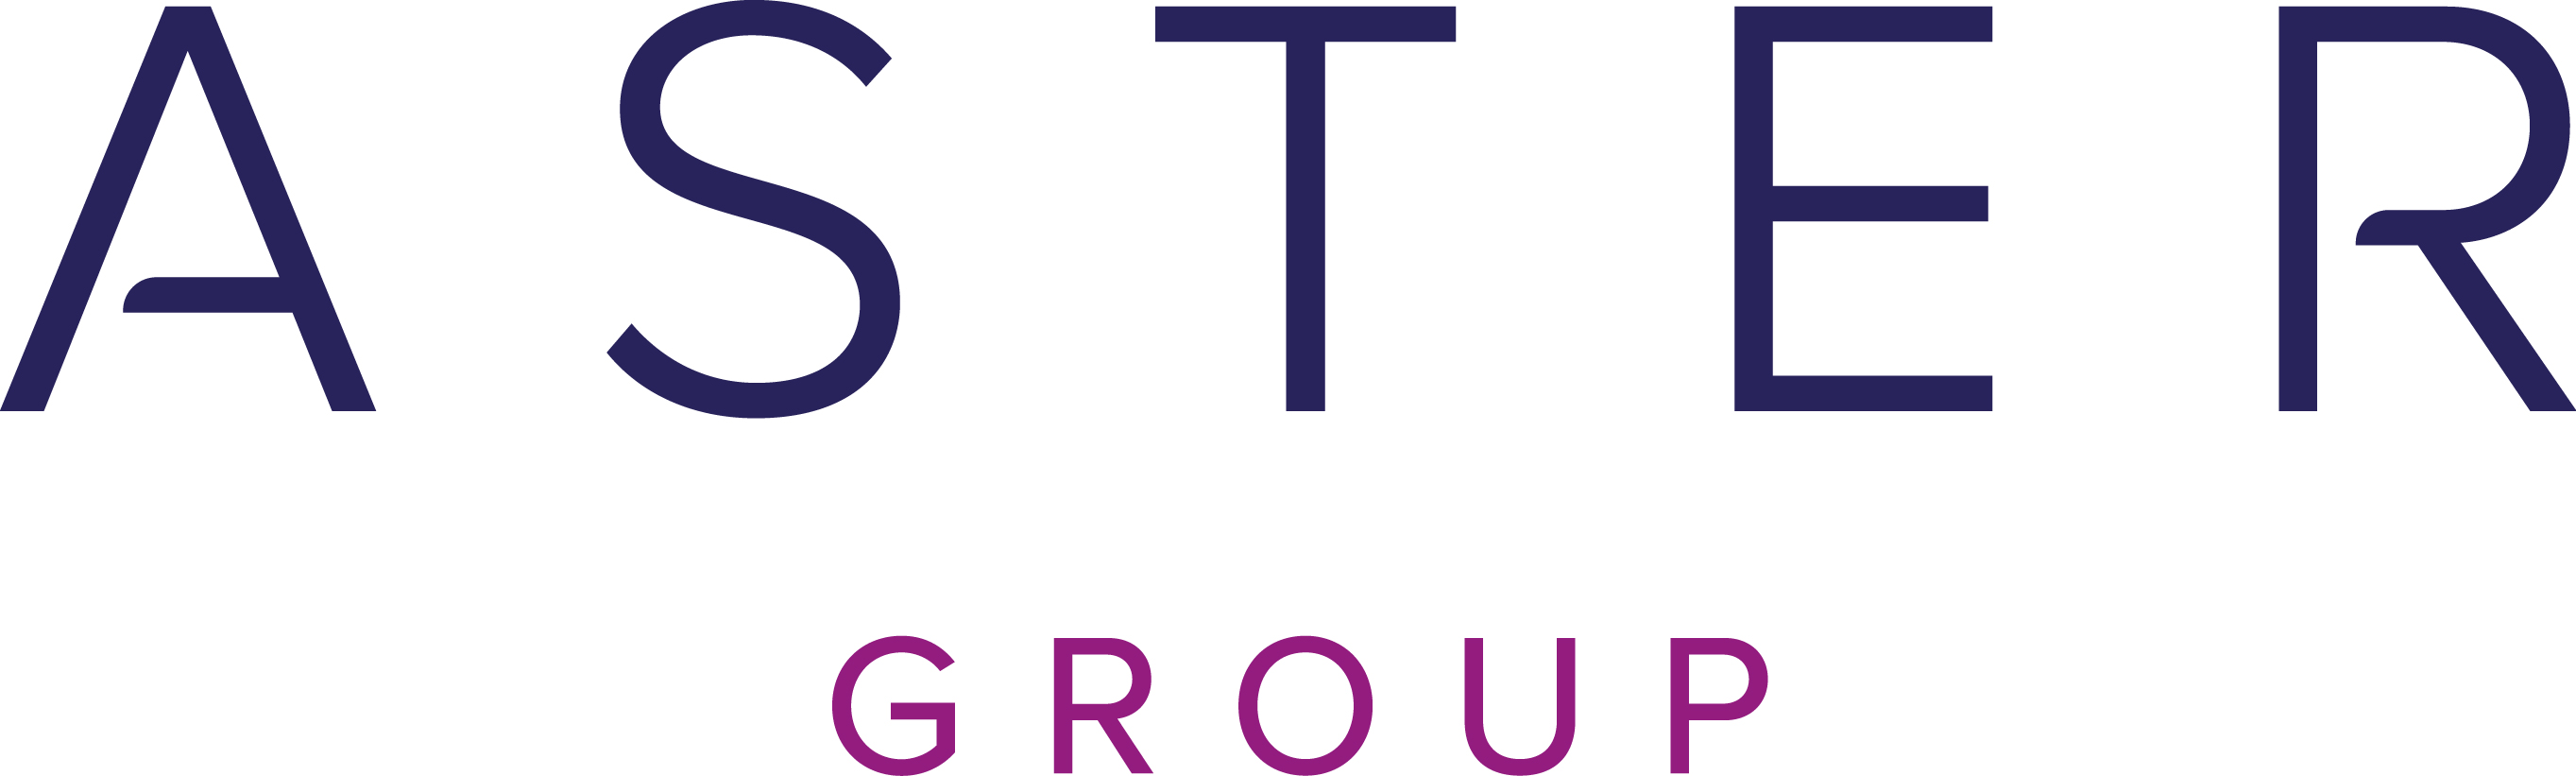 Aster-Group-Logo.jpg